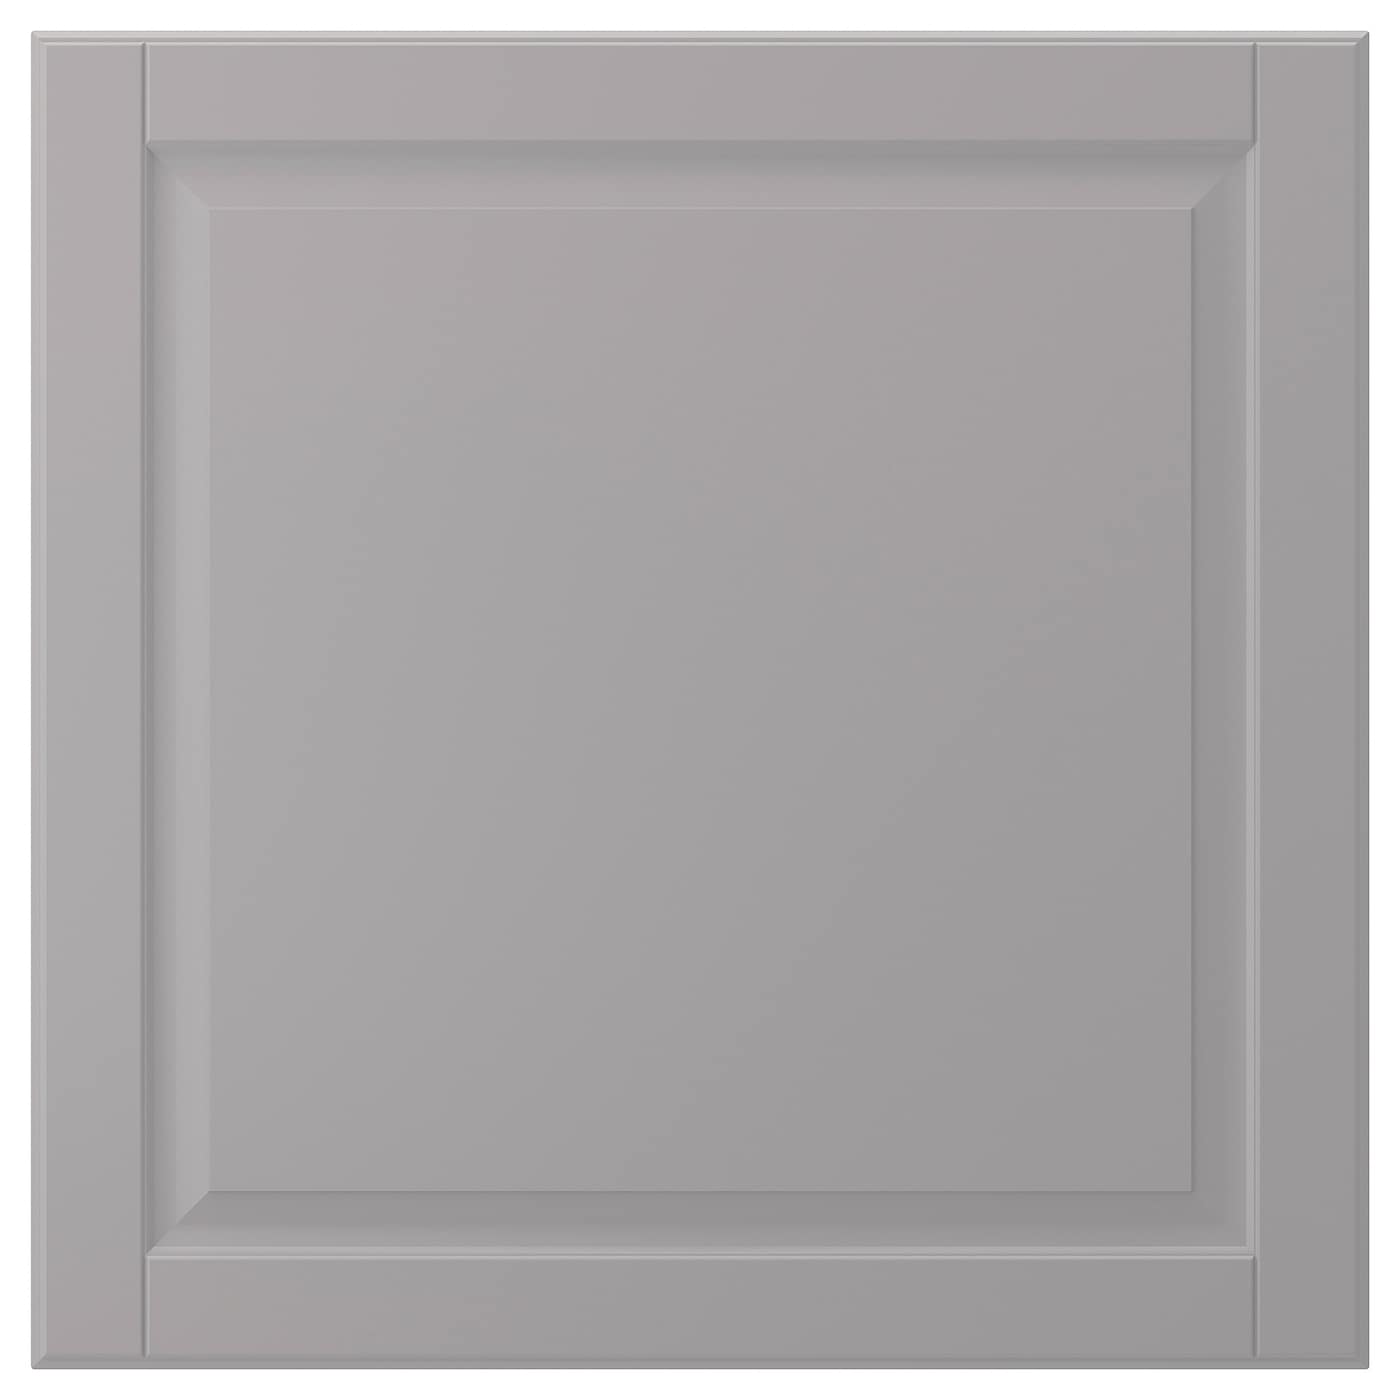 Дверца - IKEA BODBYN, 60х60 см, серый, БУДБИН ИКЕА